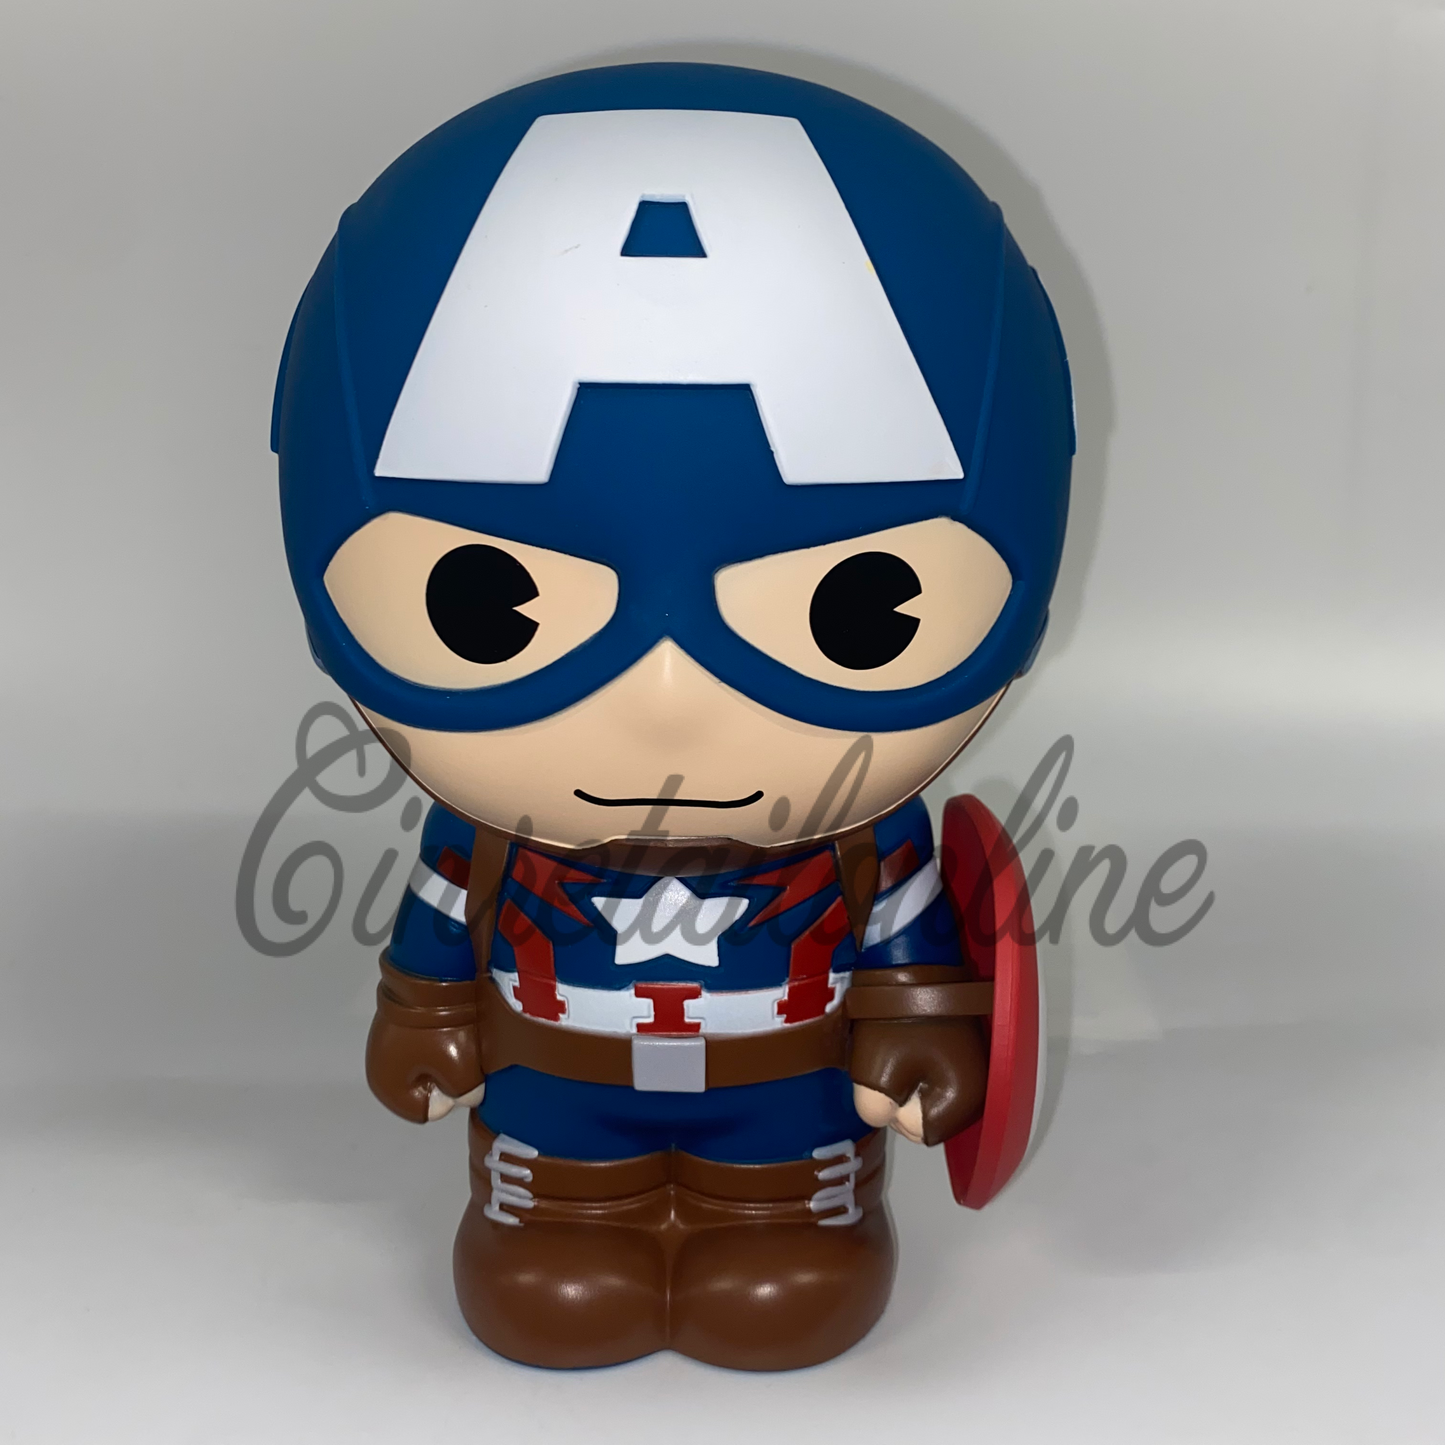 Captain America coin bank